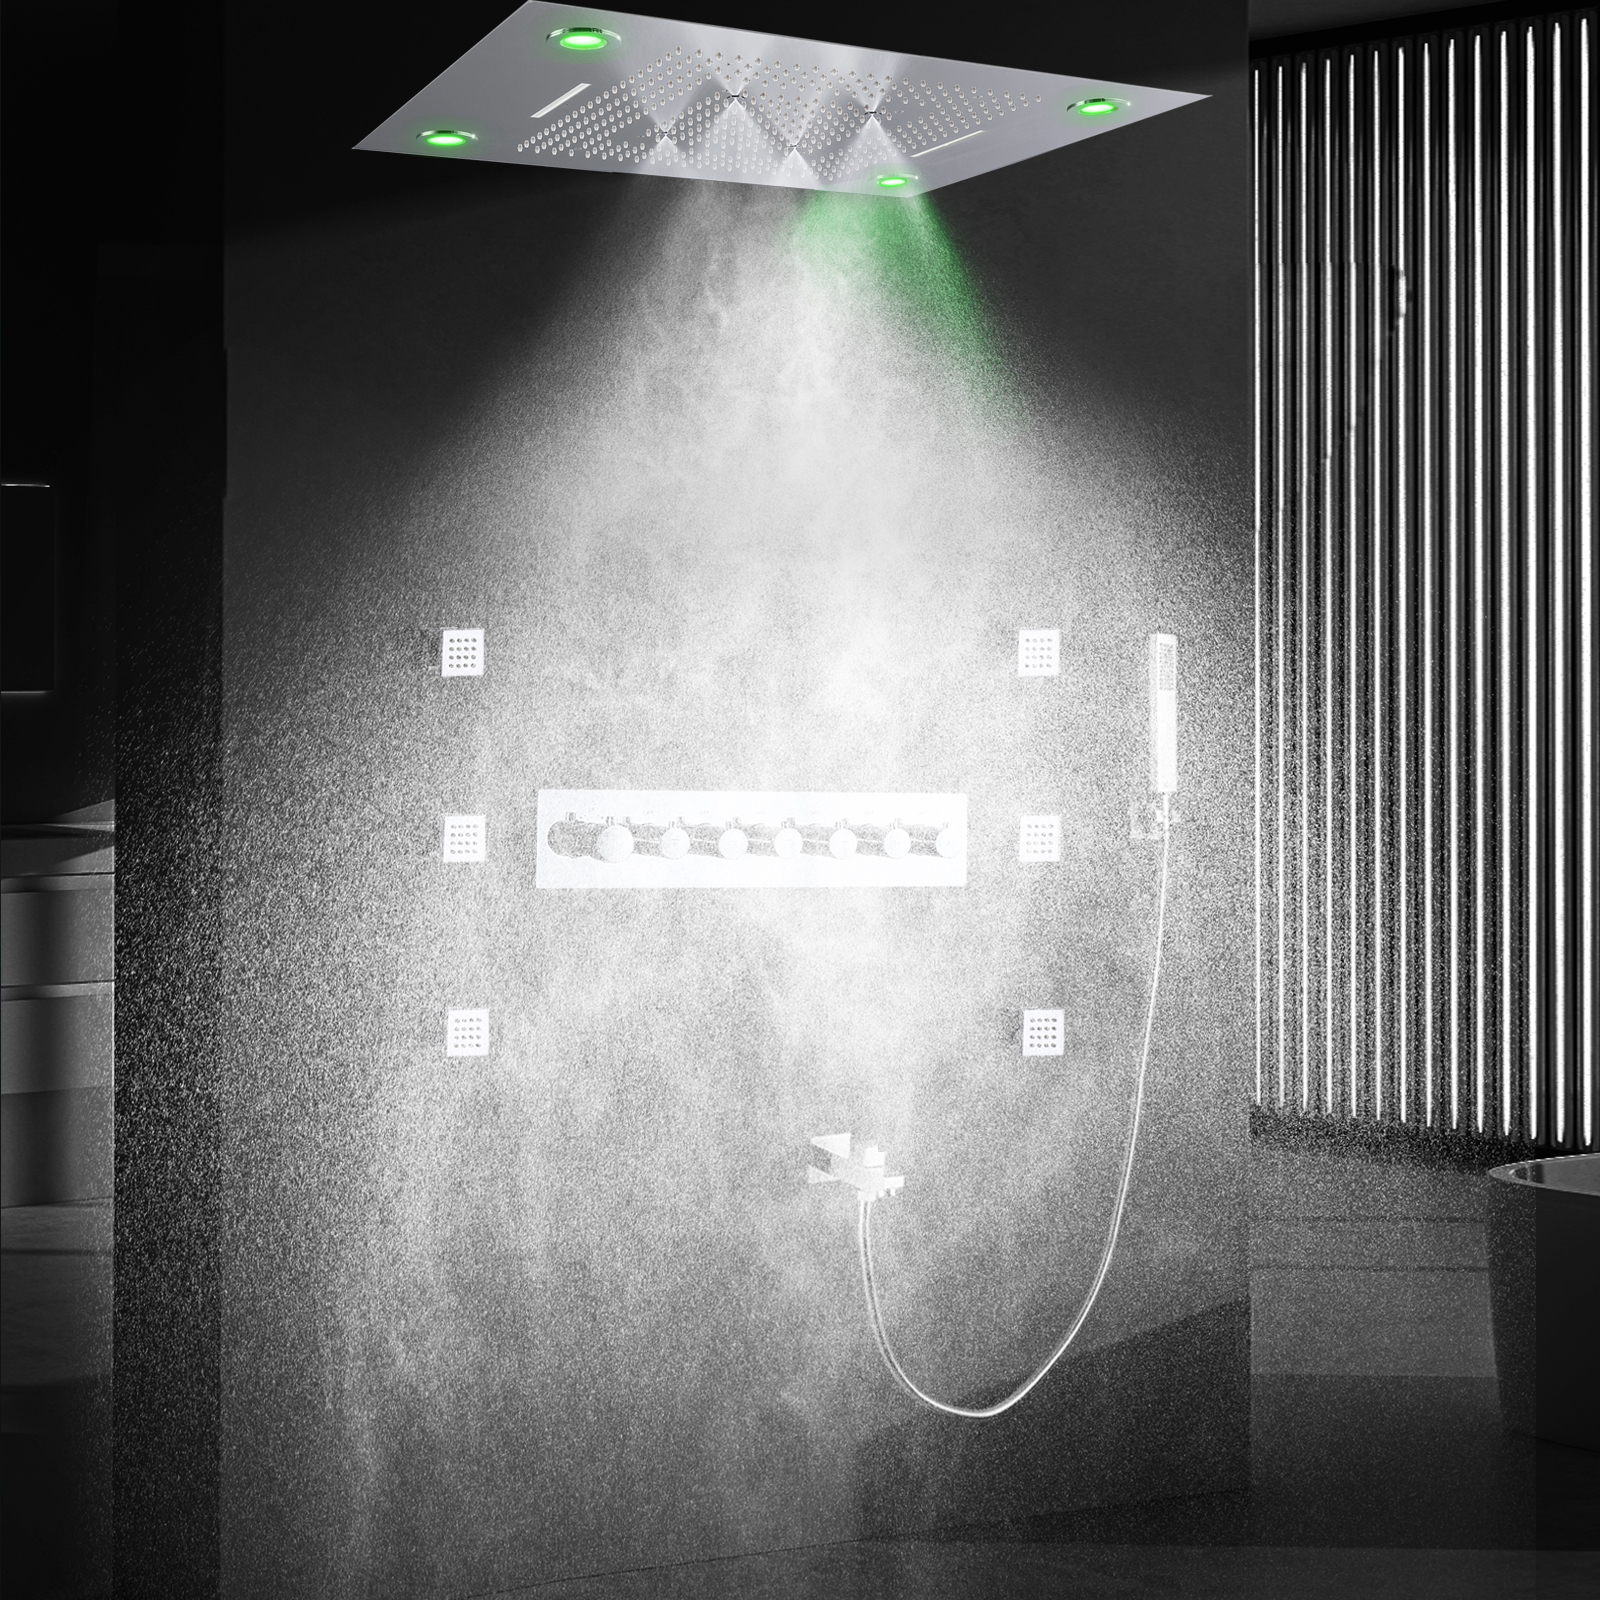 Sistema de ducha Led musical montado en el techo, cabezal de ducha de lluvia y cascada de 32x24 pulgadas, juego de mezclador de ducha termostático para baño